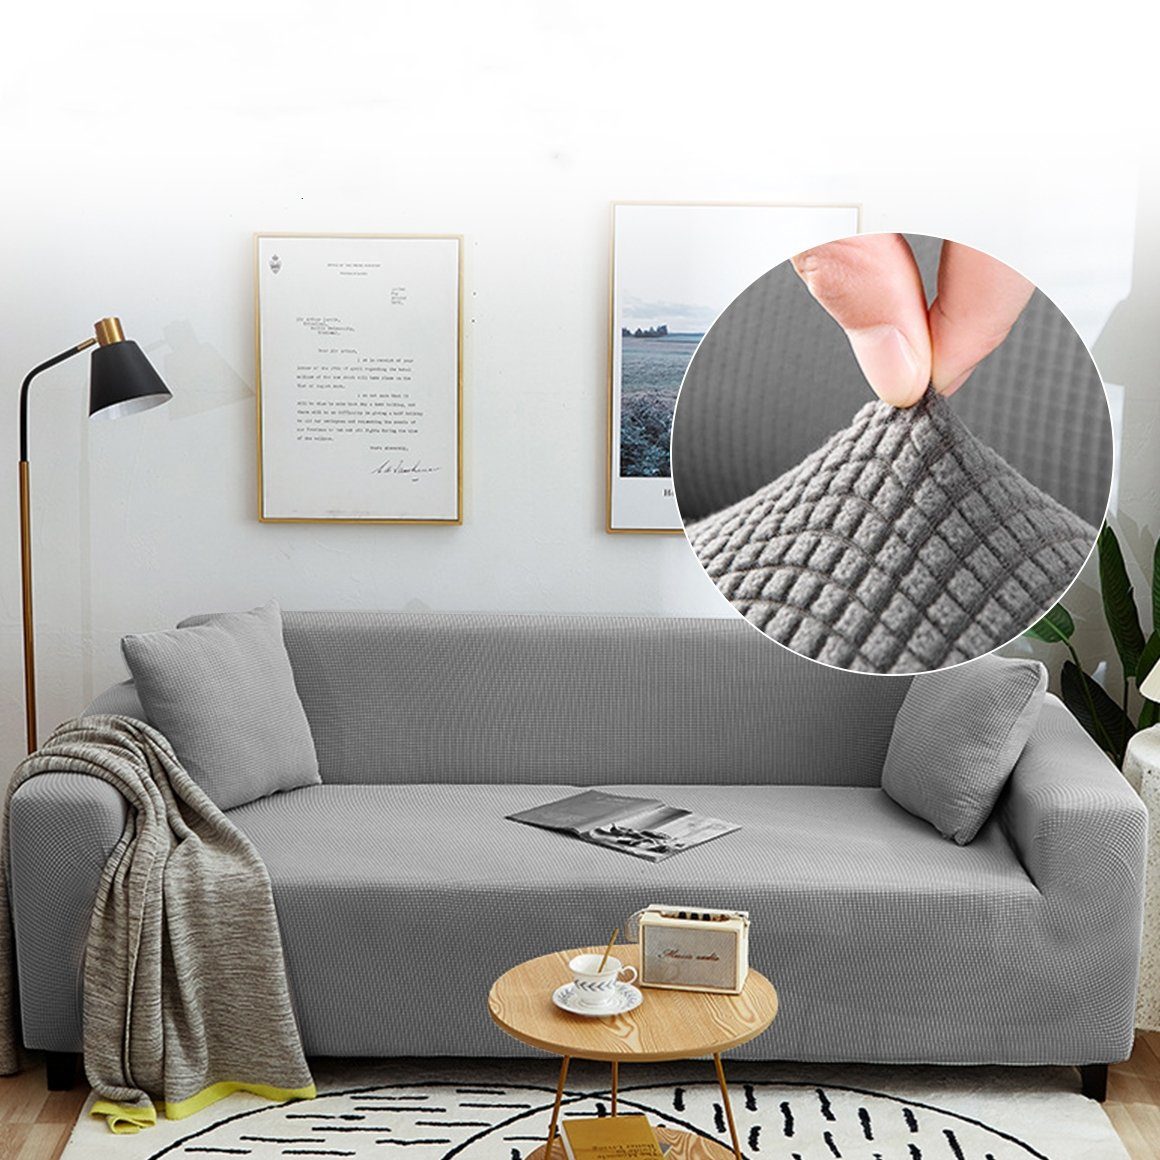 Sofahusse Stretch-Sofabezug Elastisch Couch Sesselbezug mit dezentem Muster, MULISOFT, mit elastischem Bund, rutschfesten Schaumstoffstreifen Grau